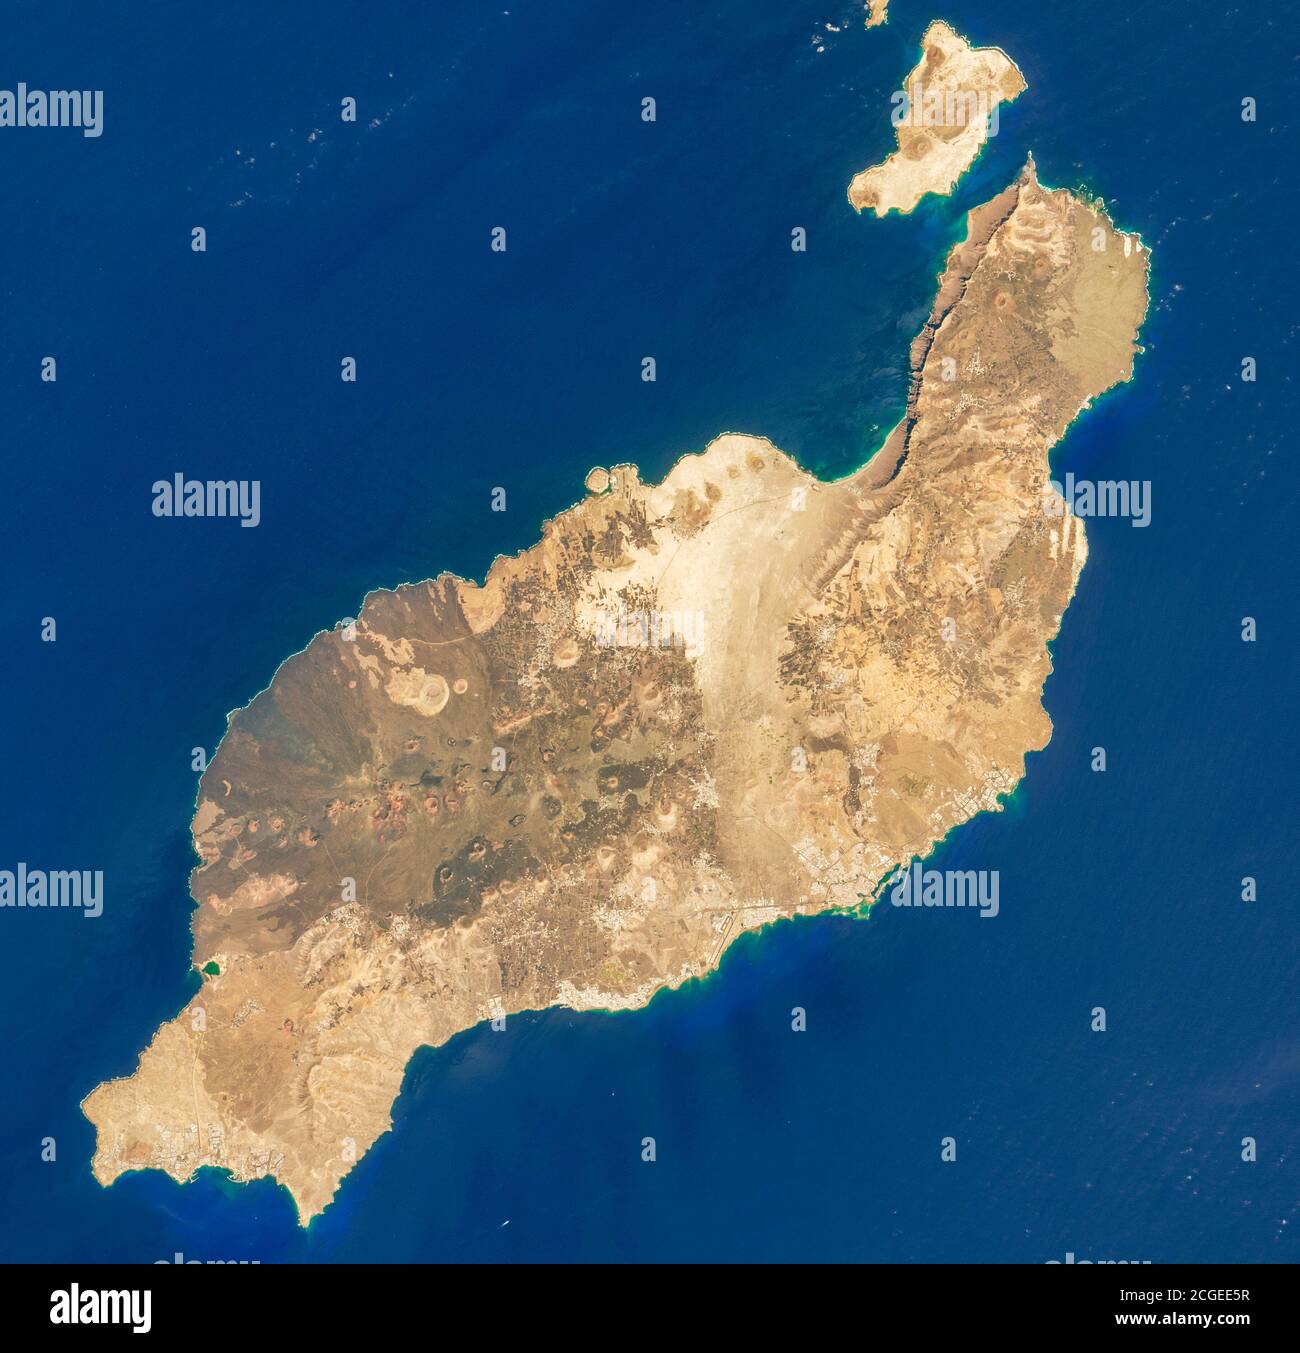 Satellitenansicht von Lanzarote, Kanarische Inseln, Spanien - vor der Nordwestküste Afrikas, Stockfoto